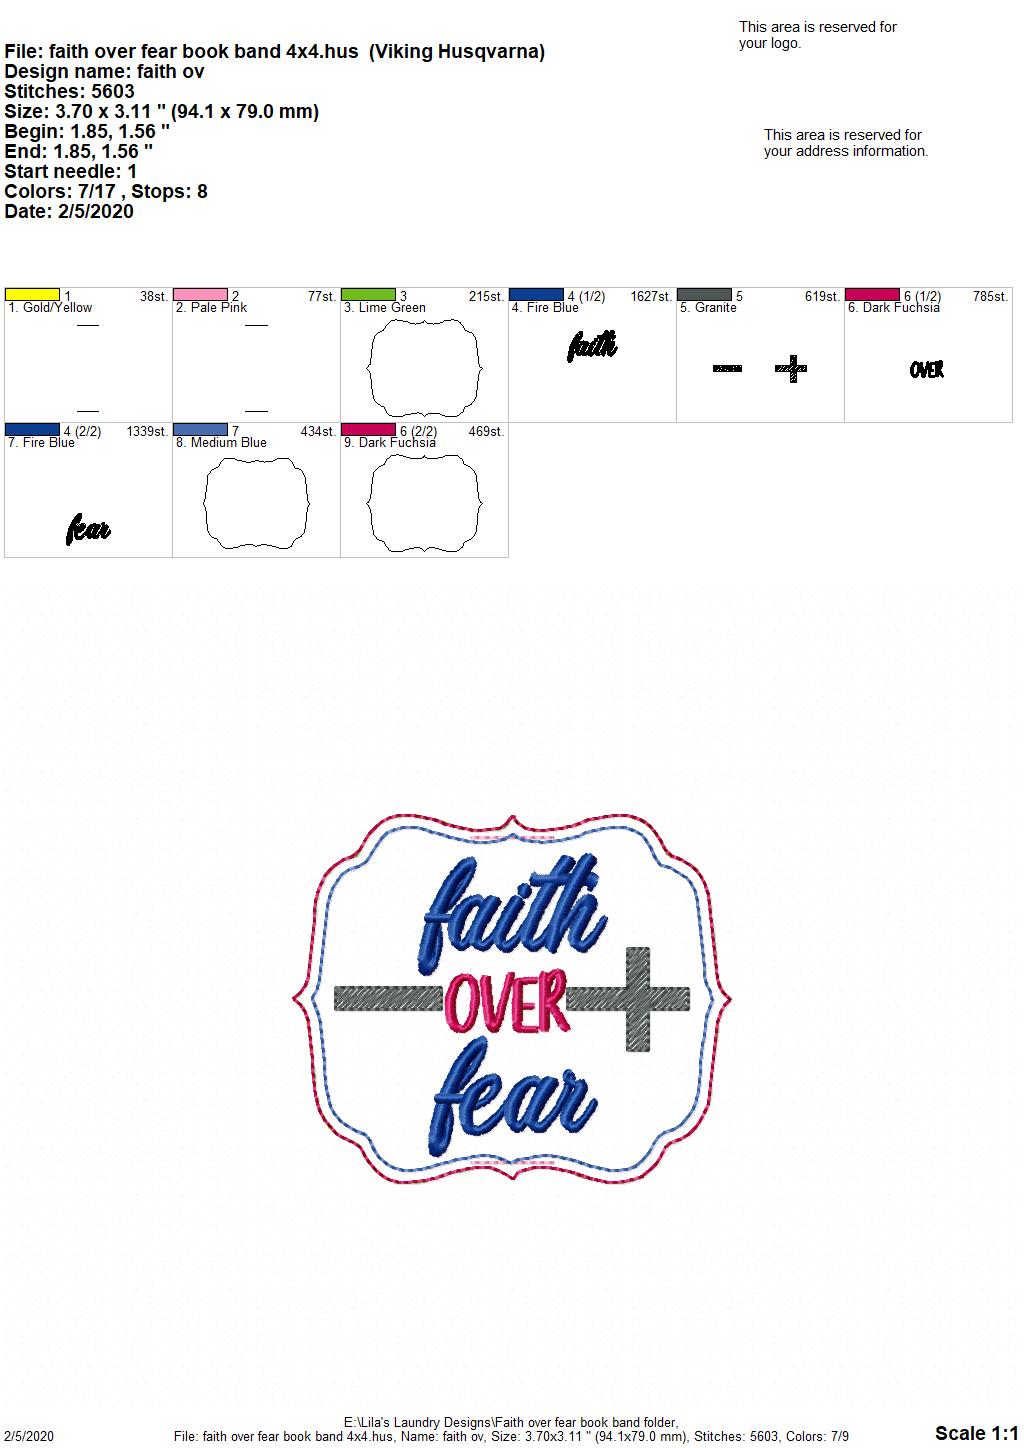 Faith Over Fear - Book Band - Digital Embroidery Design